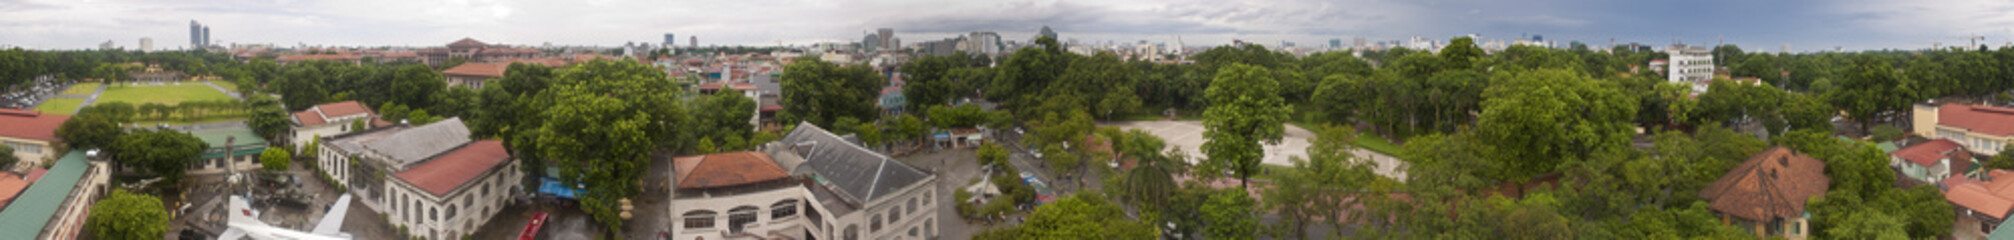 Fototapeta na wymiar Panorama Hanoi, stolicy Wietnamu